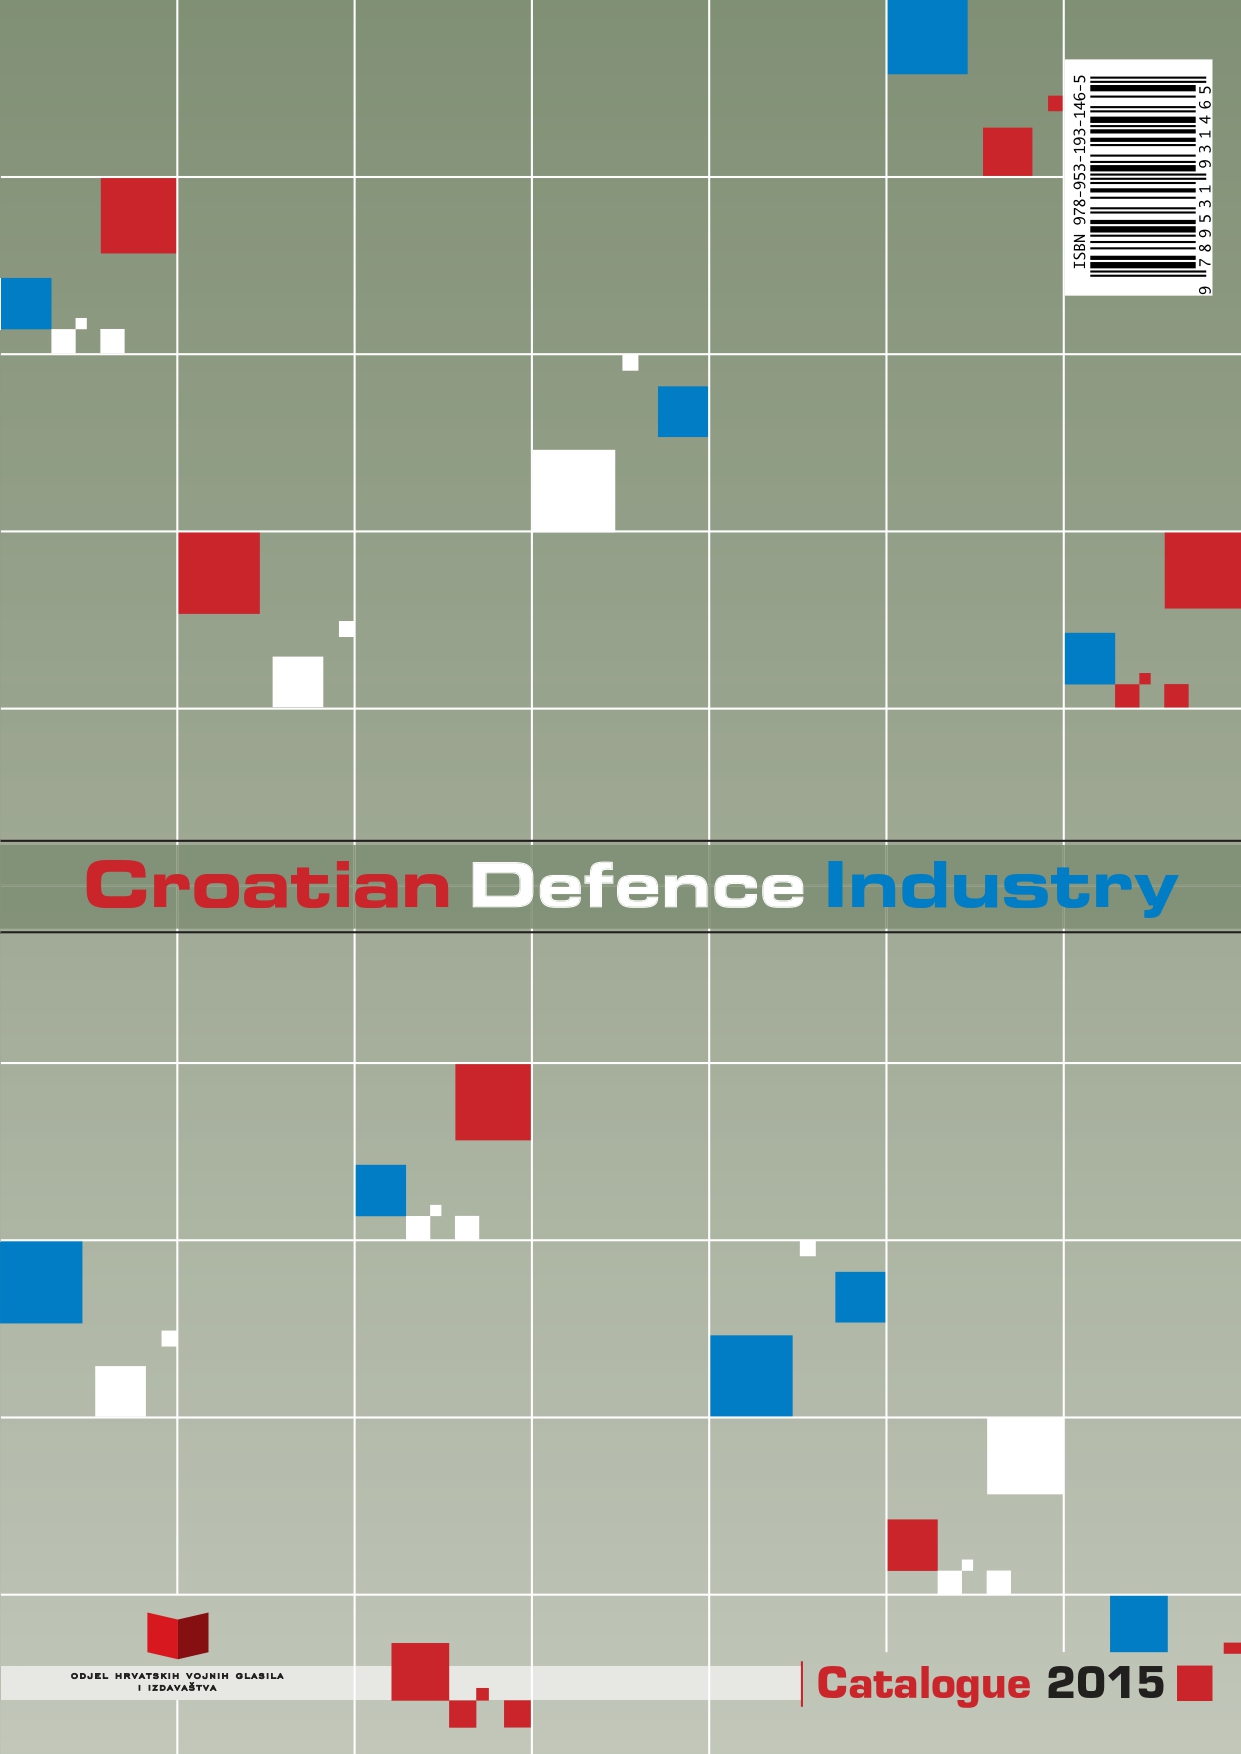 صناعة الدفاع الكرواتية croatian defense industry